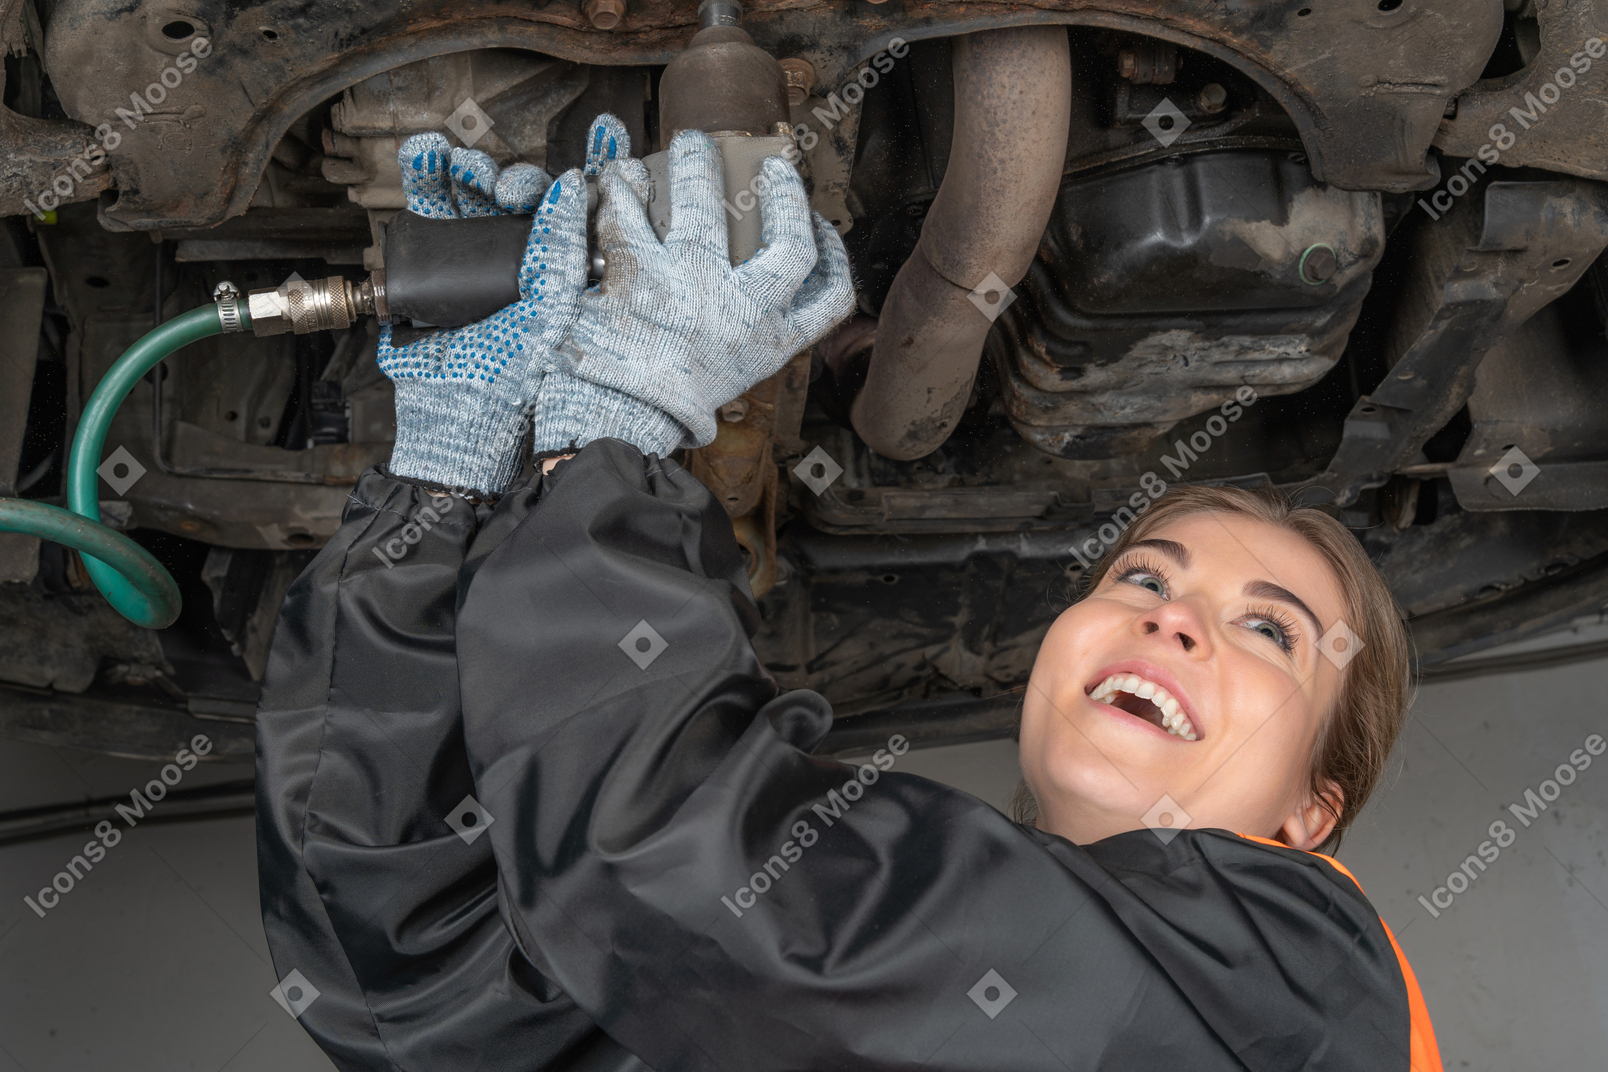 Young woman repairing car